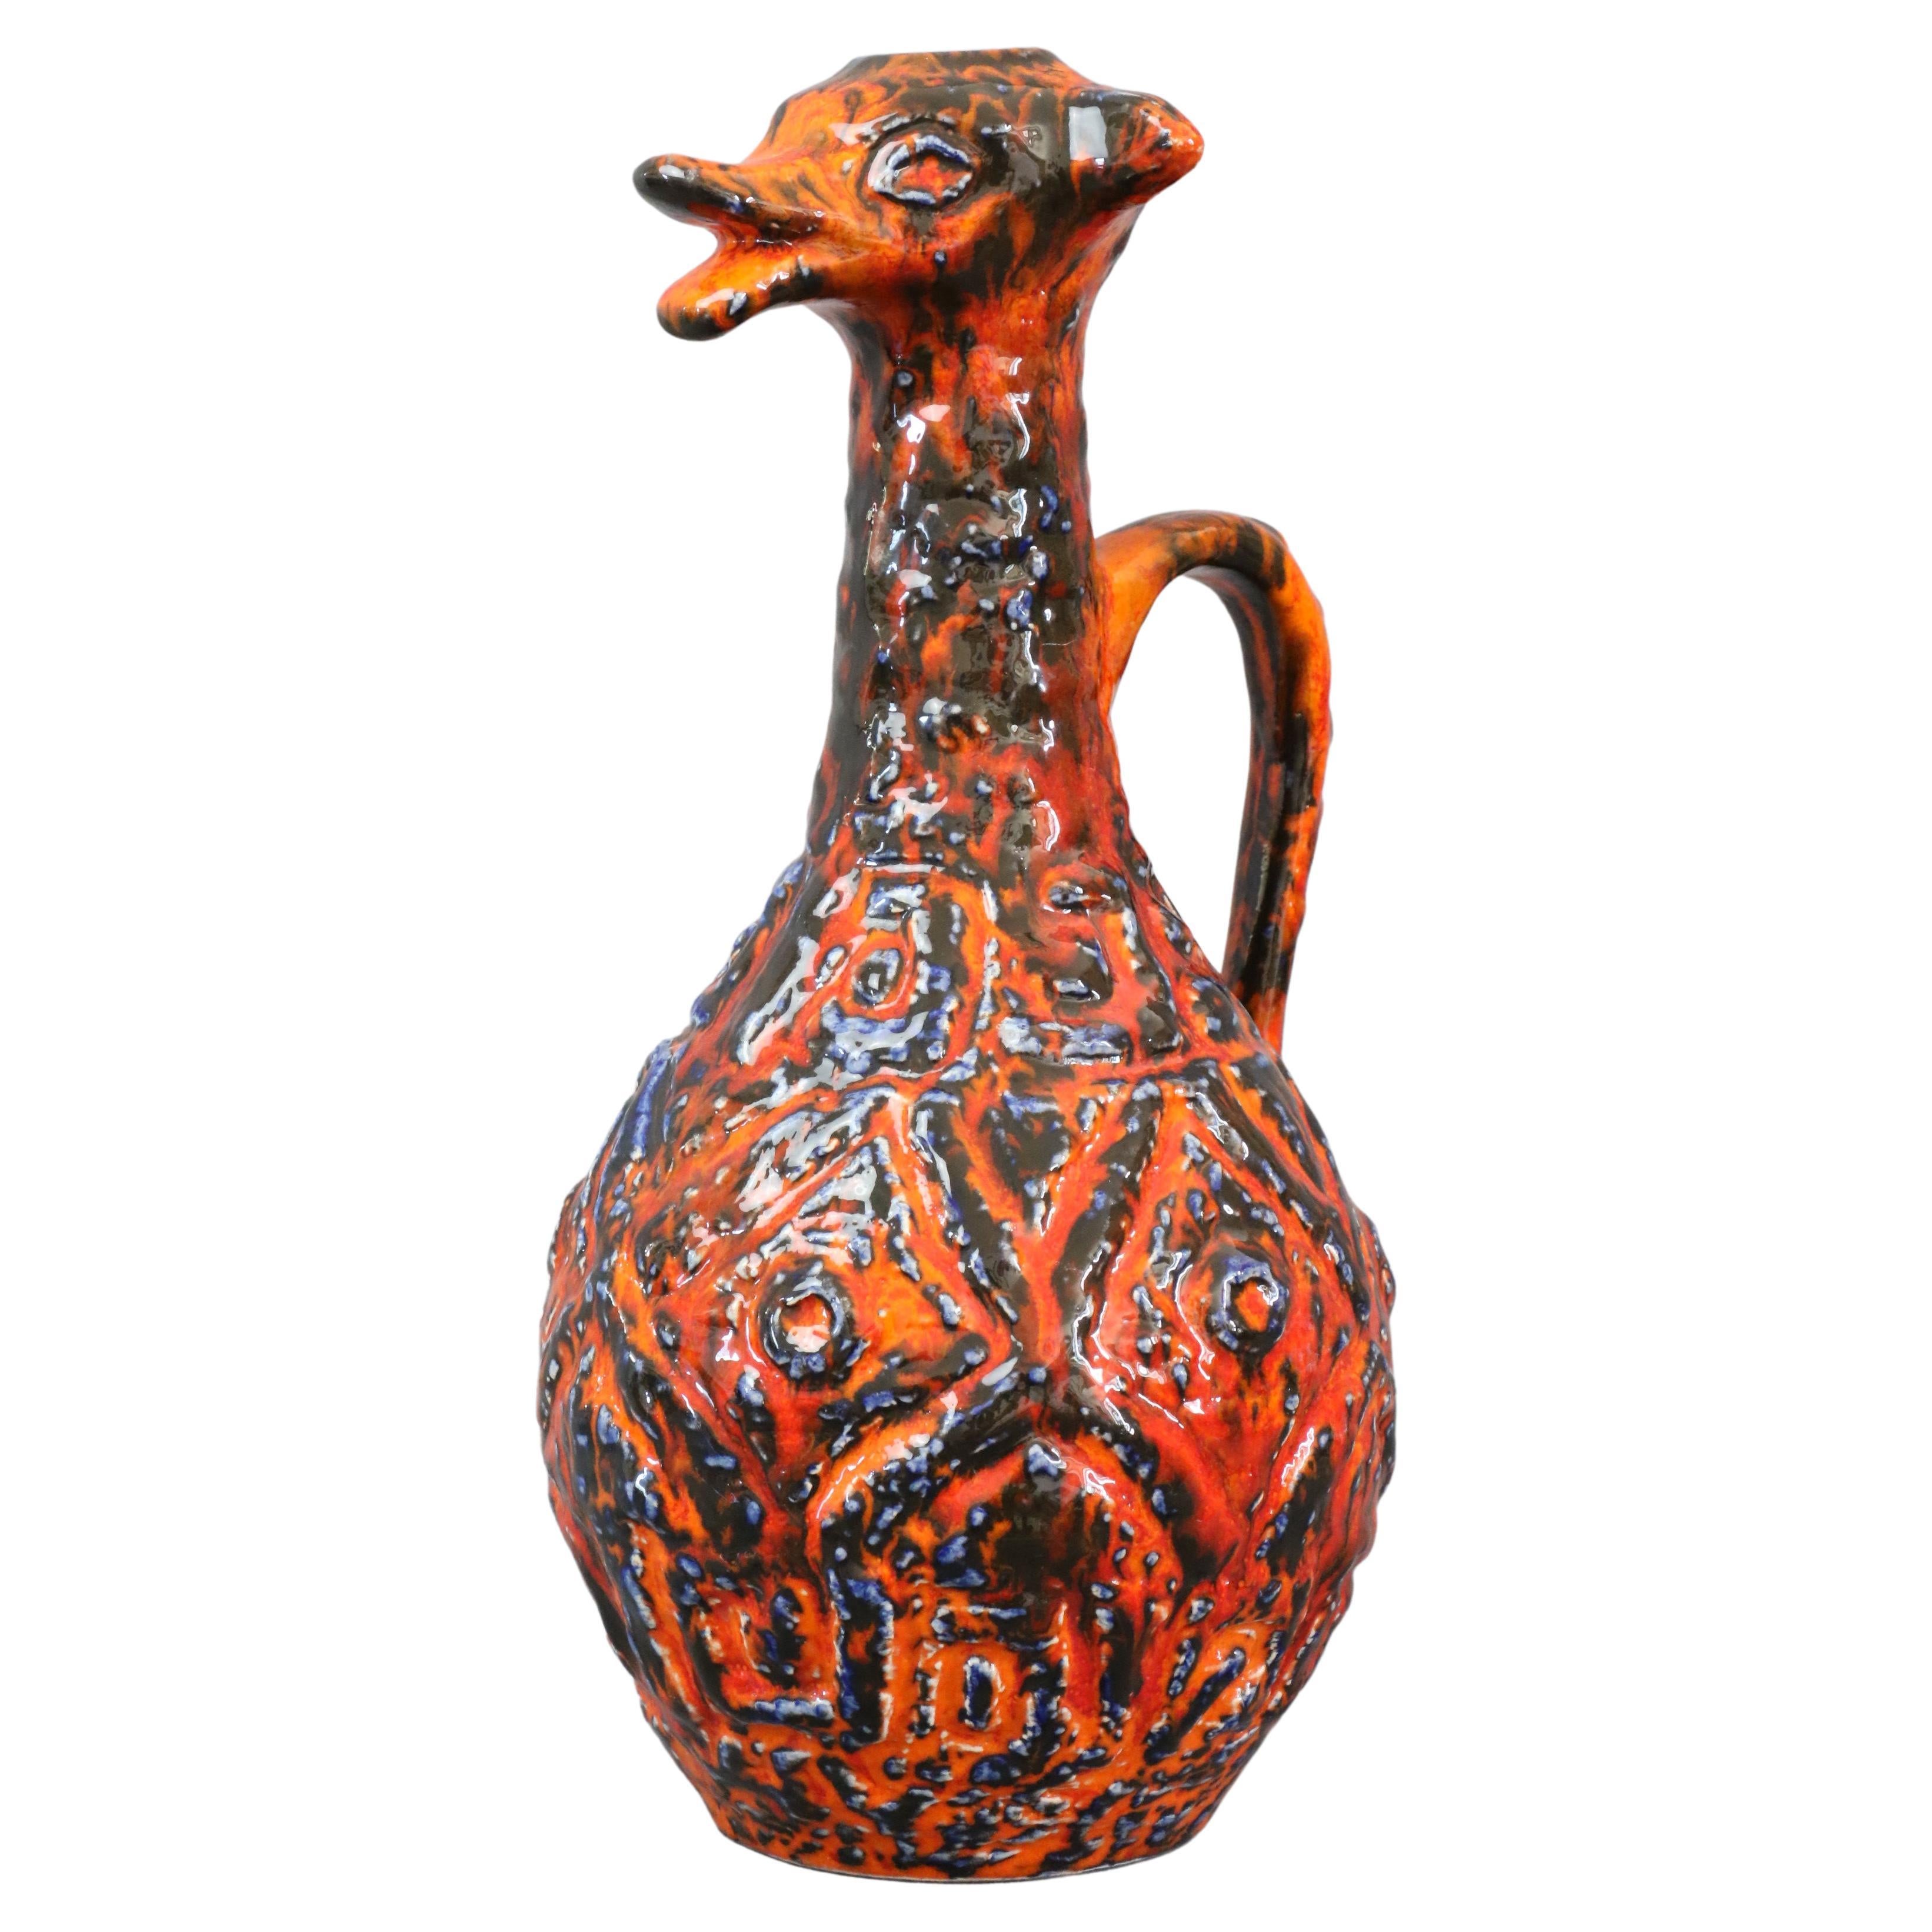 Grand vase zoomorphe en lave rouge grasse de JASBA - 1970 - Céramique d'Allemagne de l'Ouest